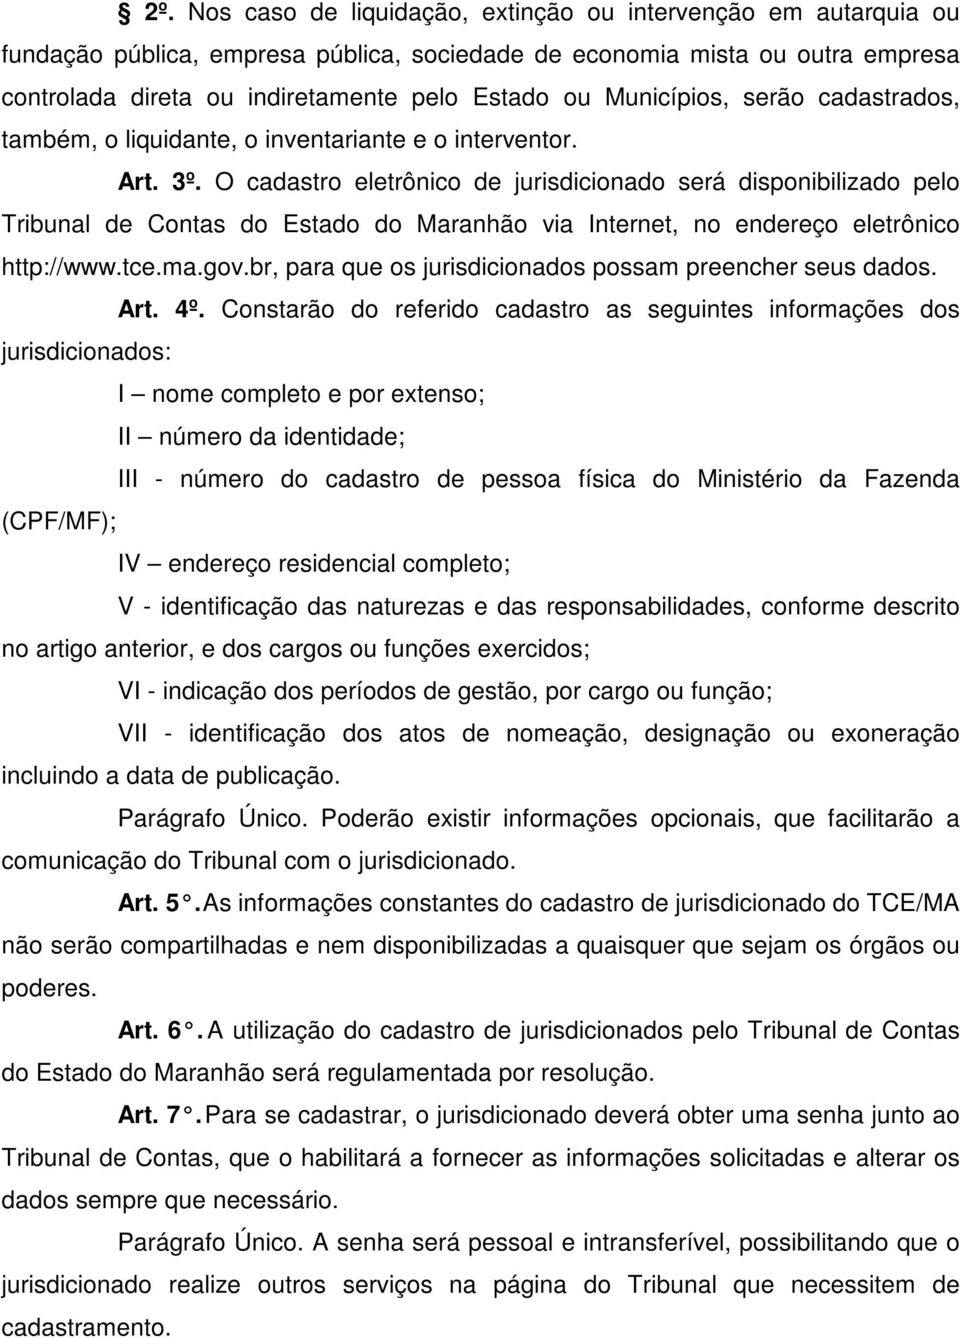 O cadastro eletrônico de jurisdicionado será disponibilizado pelo Tribunal de Contas do Estado do Maranhão via Internet, no endereço eletrônico http://www.tce.ma.gov.